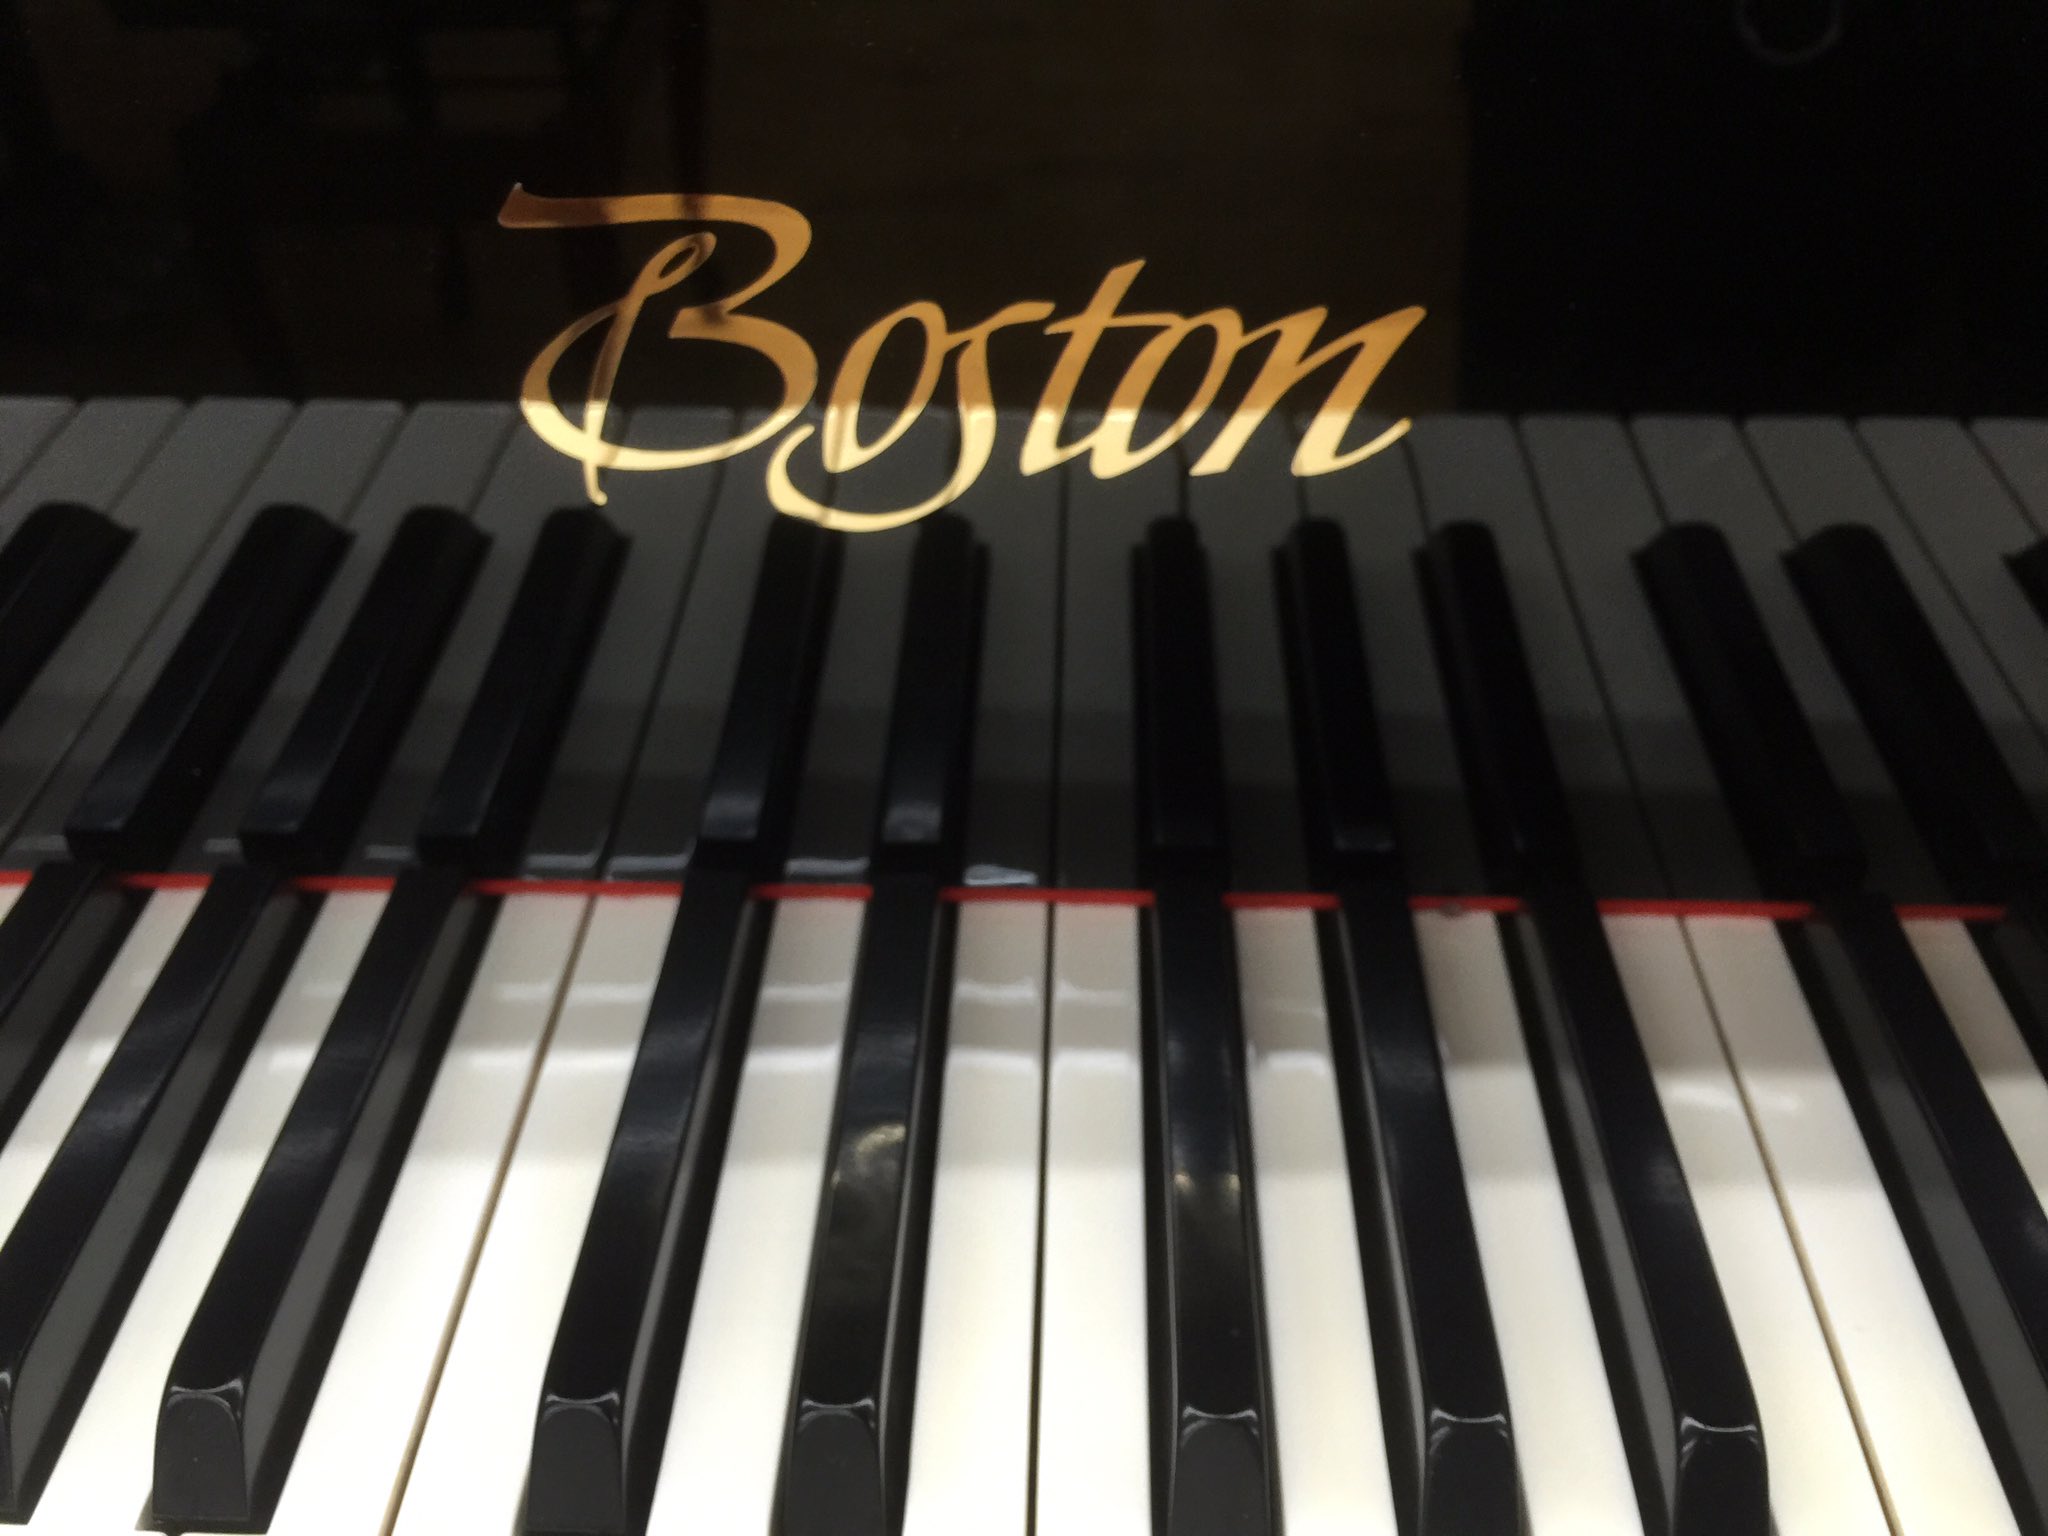 ピアノ技術者です ボストンです スタインウェイ社第二ブランド ロゴのデザインがかっこいいって思います 鍵盤蓋が角ばっているのがニューヨークスタインウェイの同じです 音も良いですが デザインもかっこいいです T Co Kh3lzlu2mz